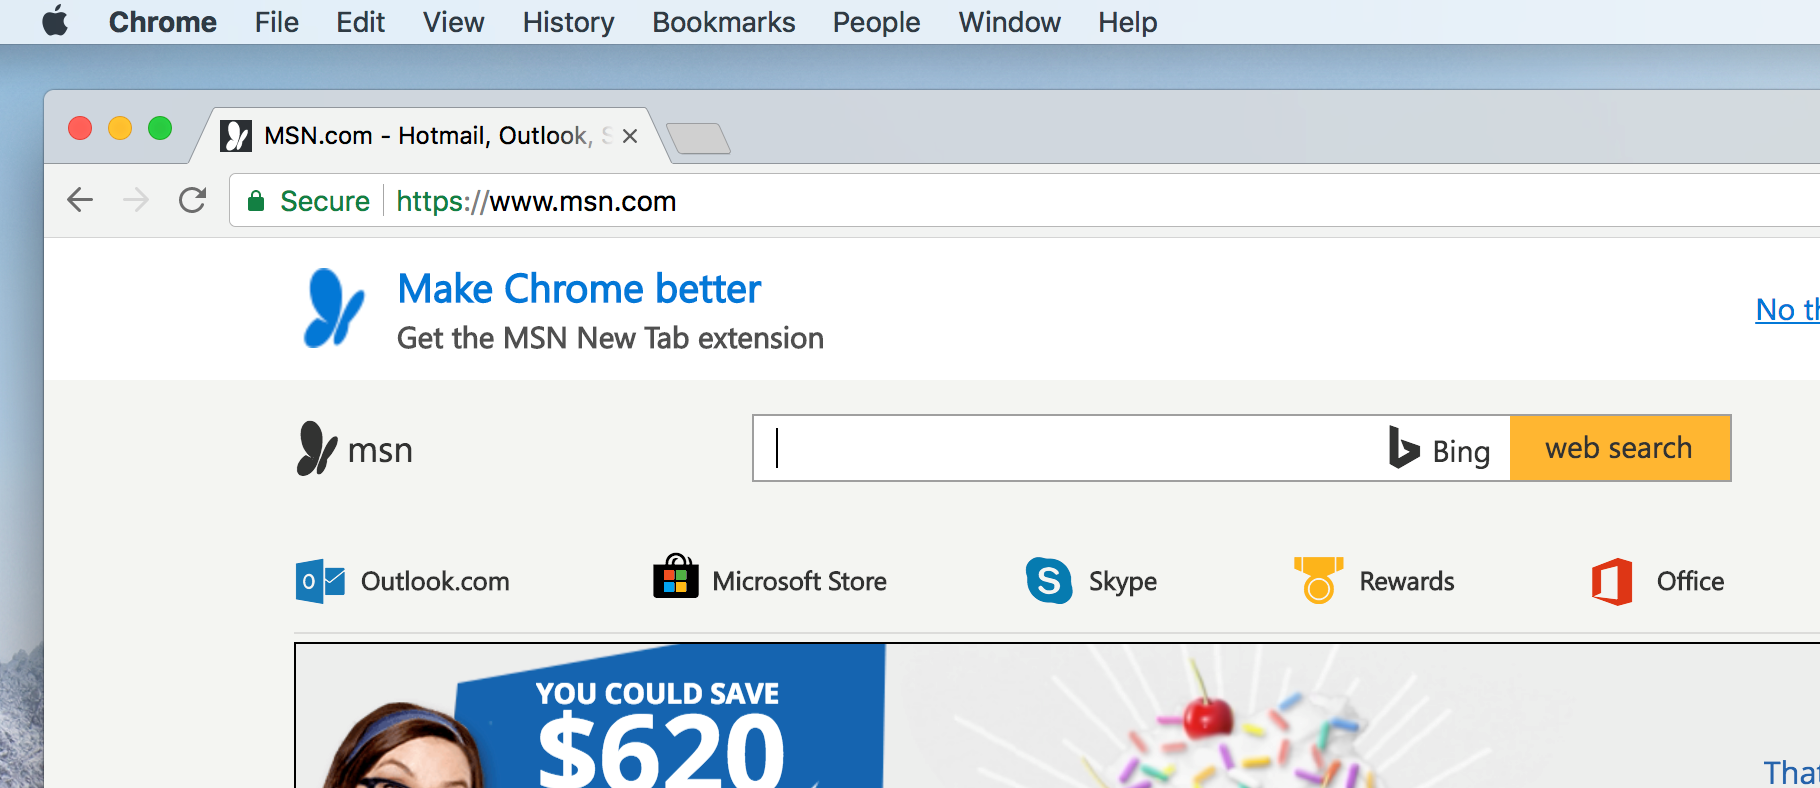 Chrome browser for macintosh